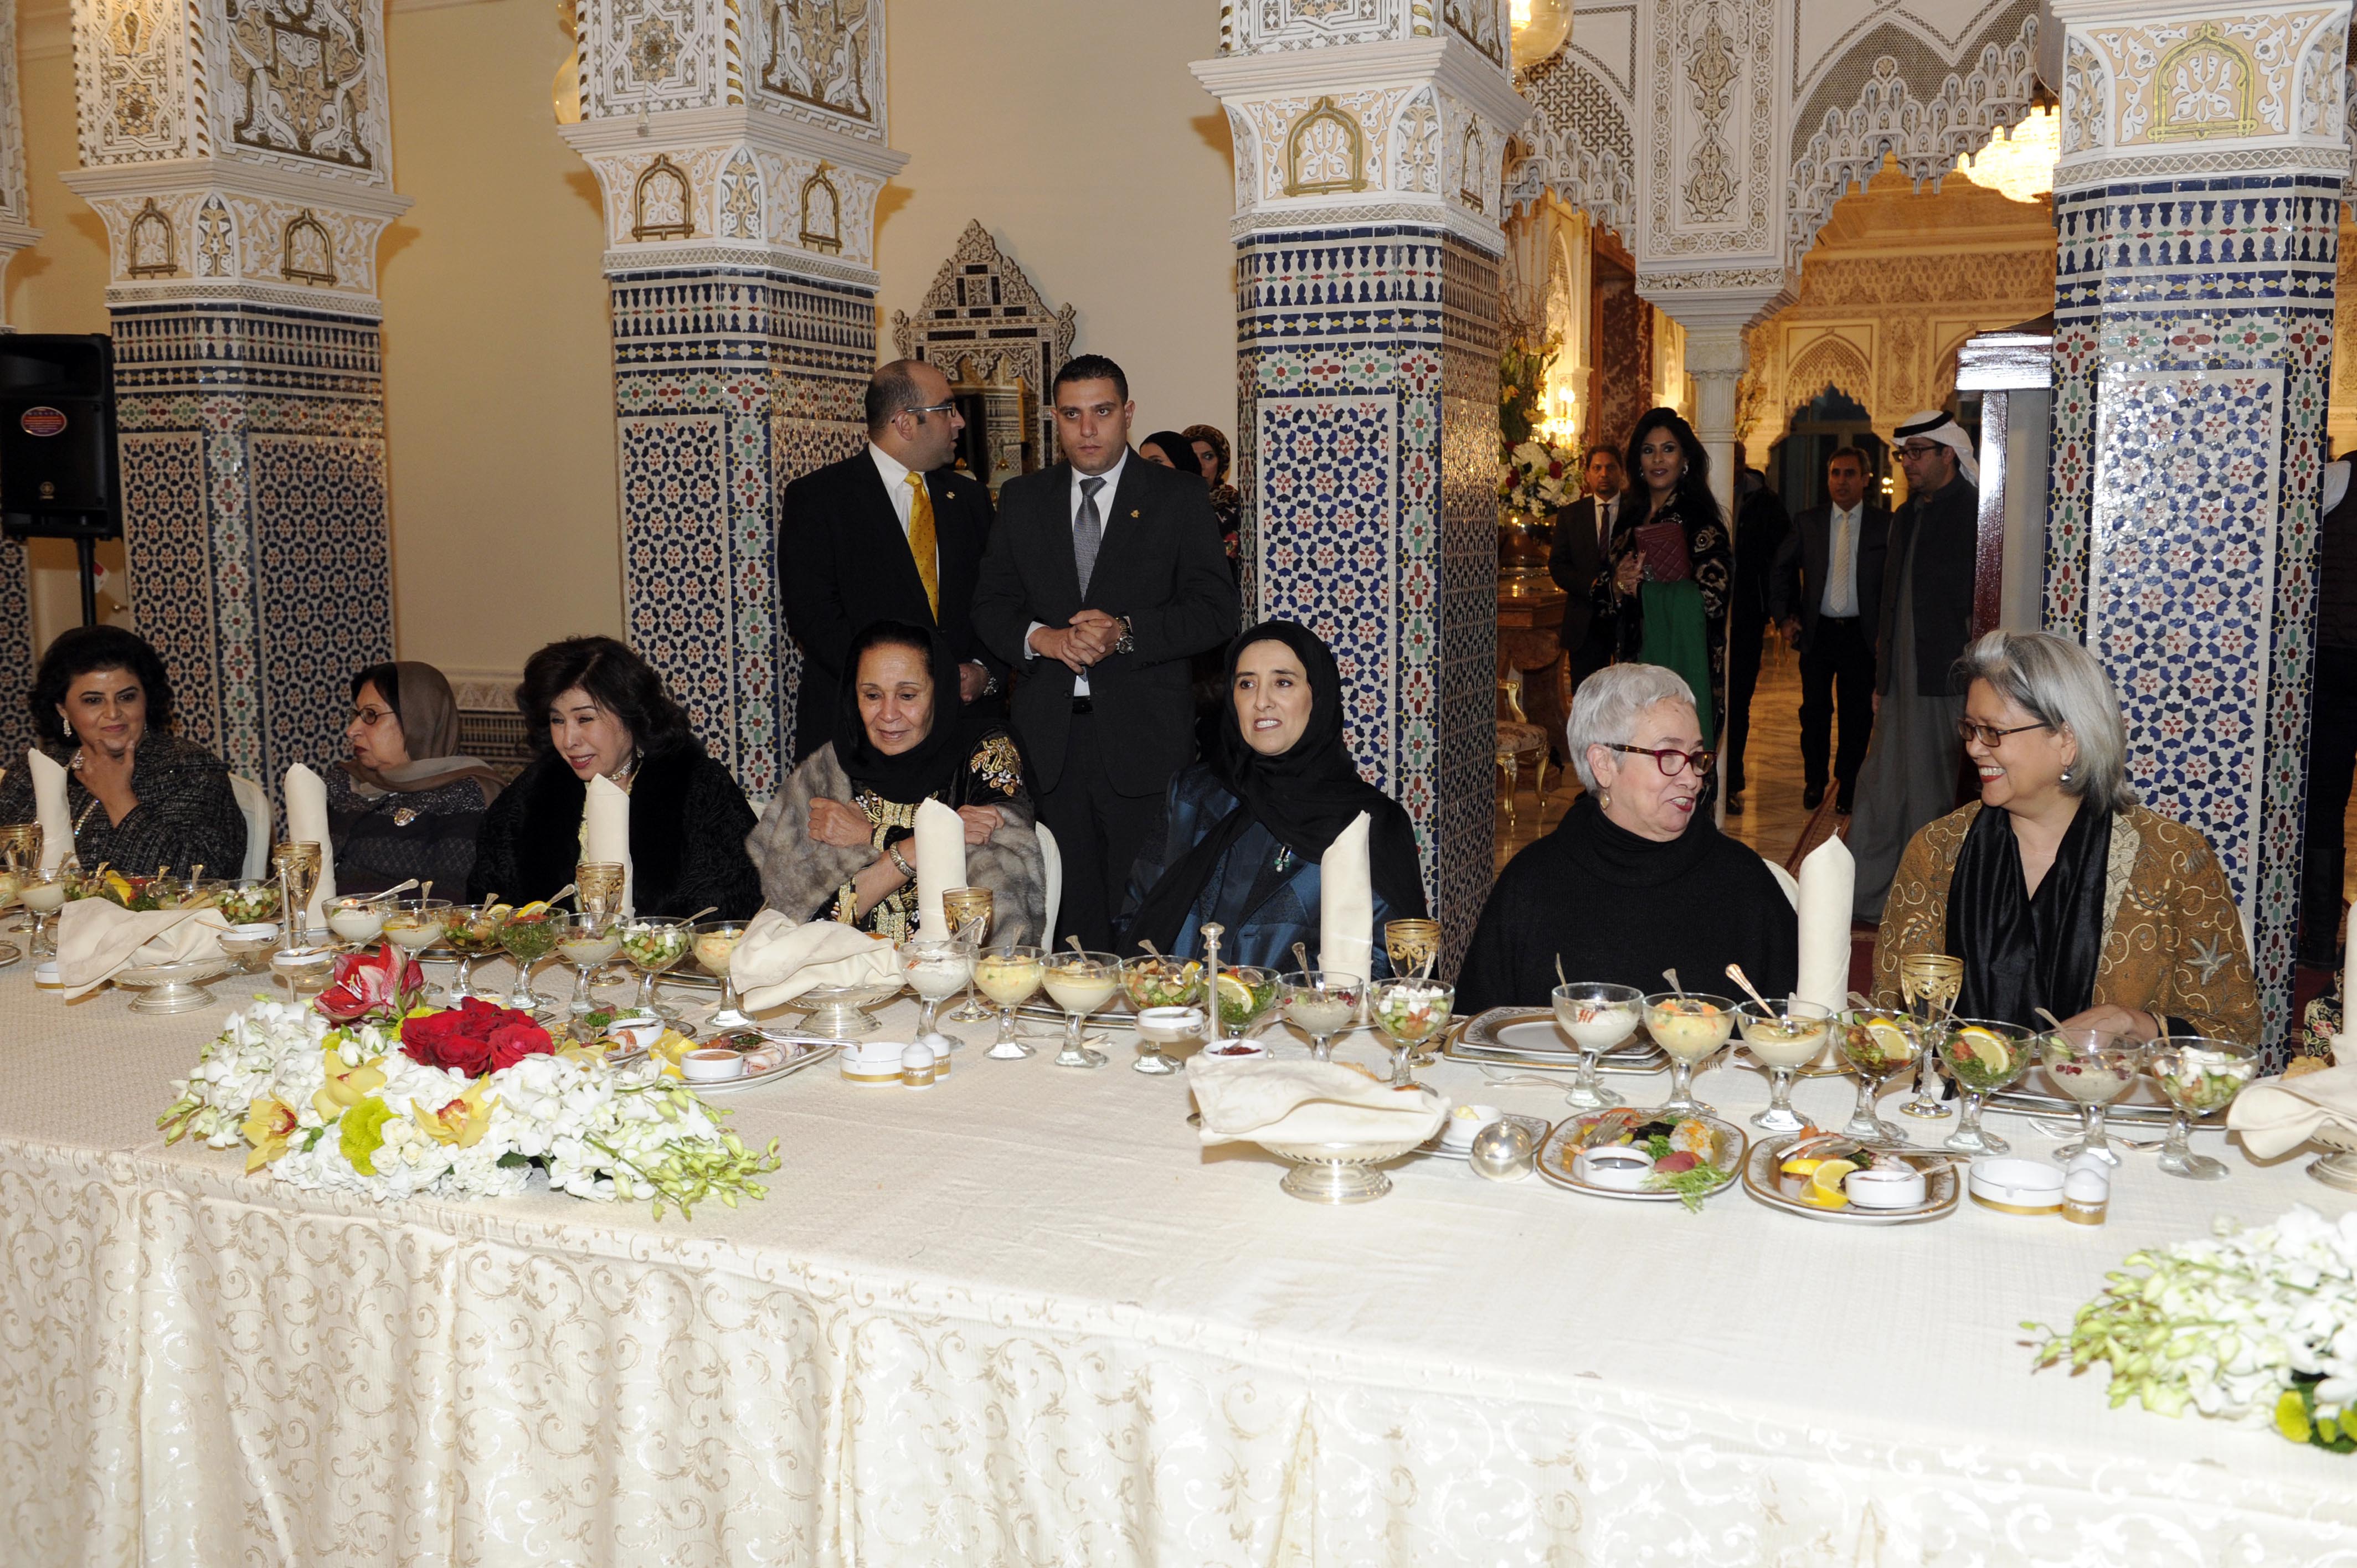 رئيسة لجنة شؤون المرأة التابعة لمجلس الوزراء الكويتي الشيخة لطيفة الفهد الصباح أثناء حفل العشاء